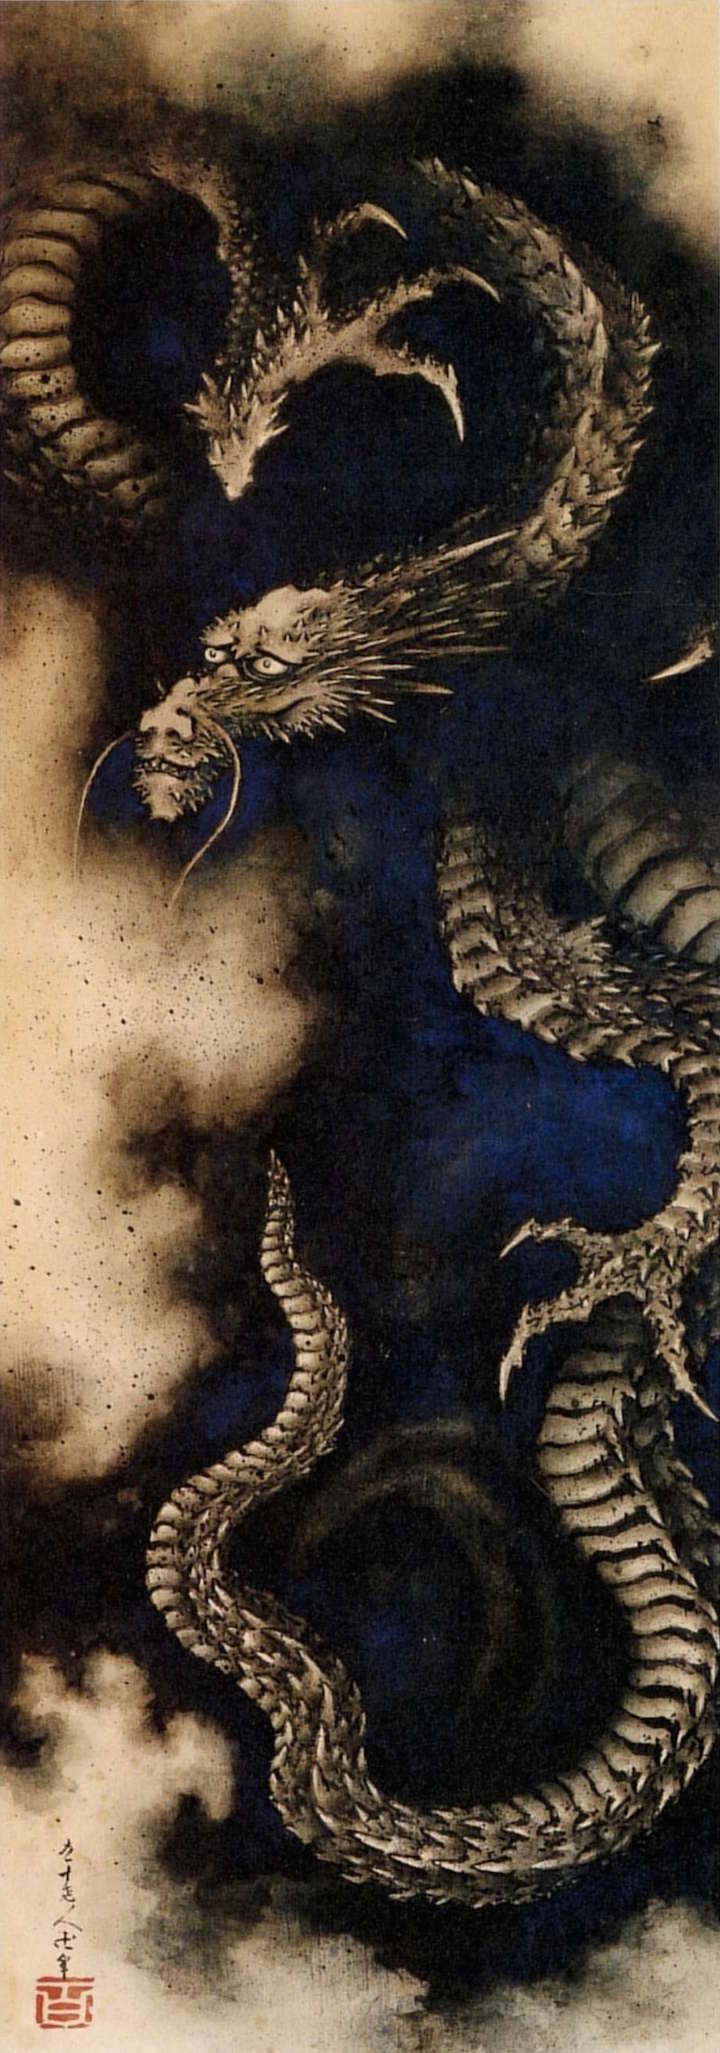 Dragon in rain clouds (1849), Hokusai. Musée national des arts asiatiques Guimet, Paris